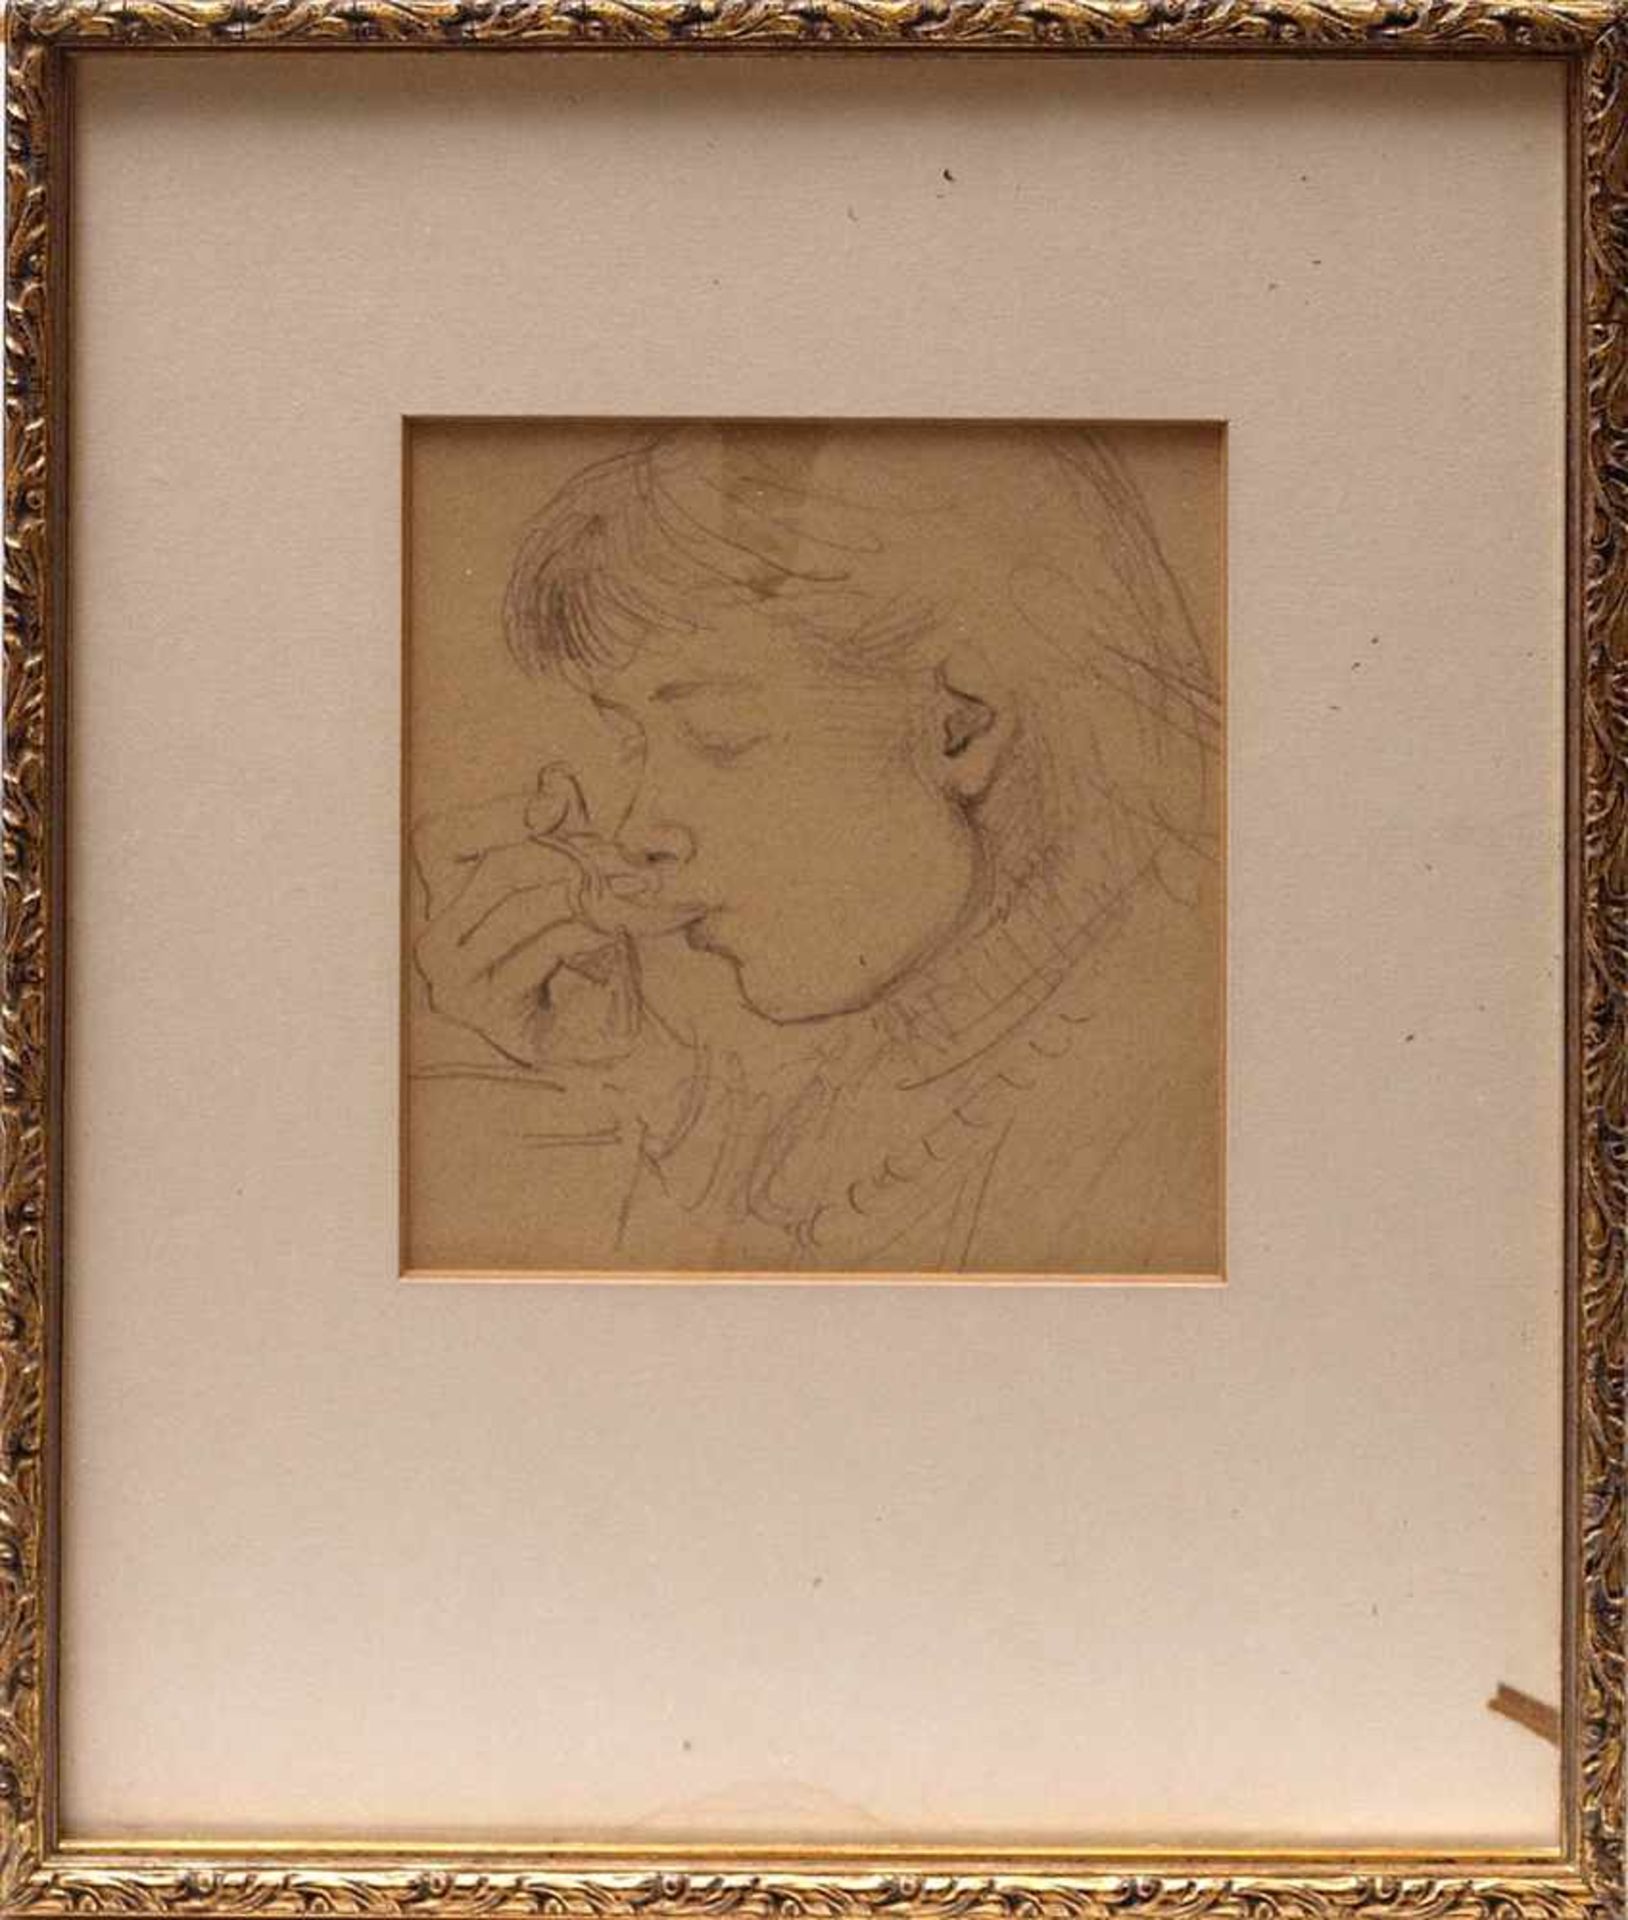 Pape, William, 1859 - 1920Brustbild eines Suppe essenden jungen Mädchens. Bleistiftzeichnung,